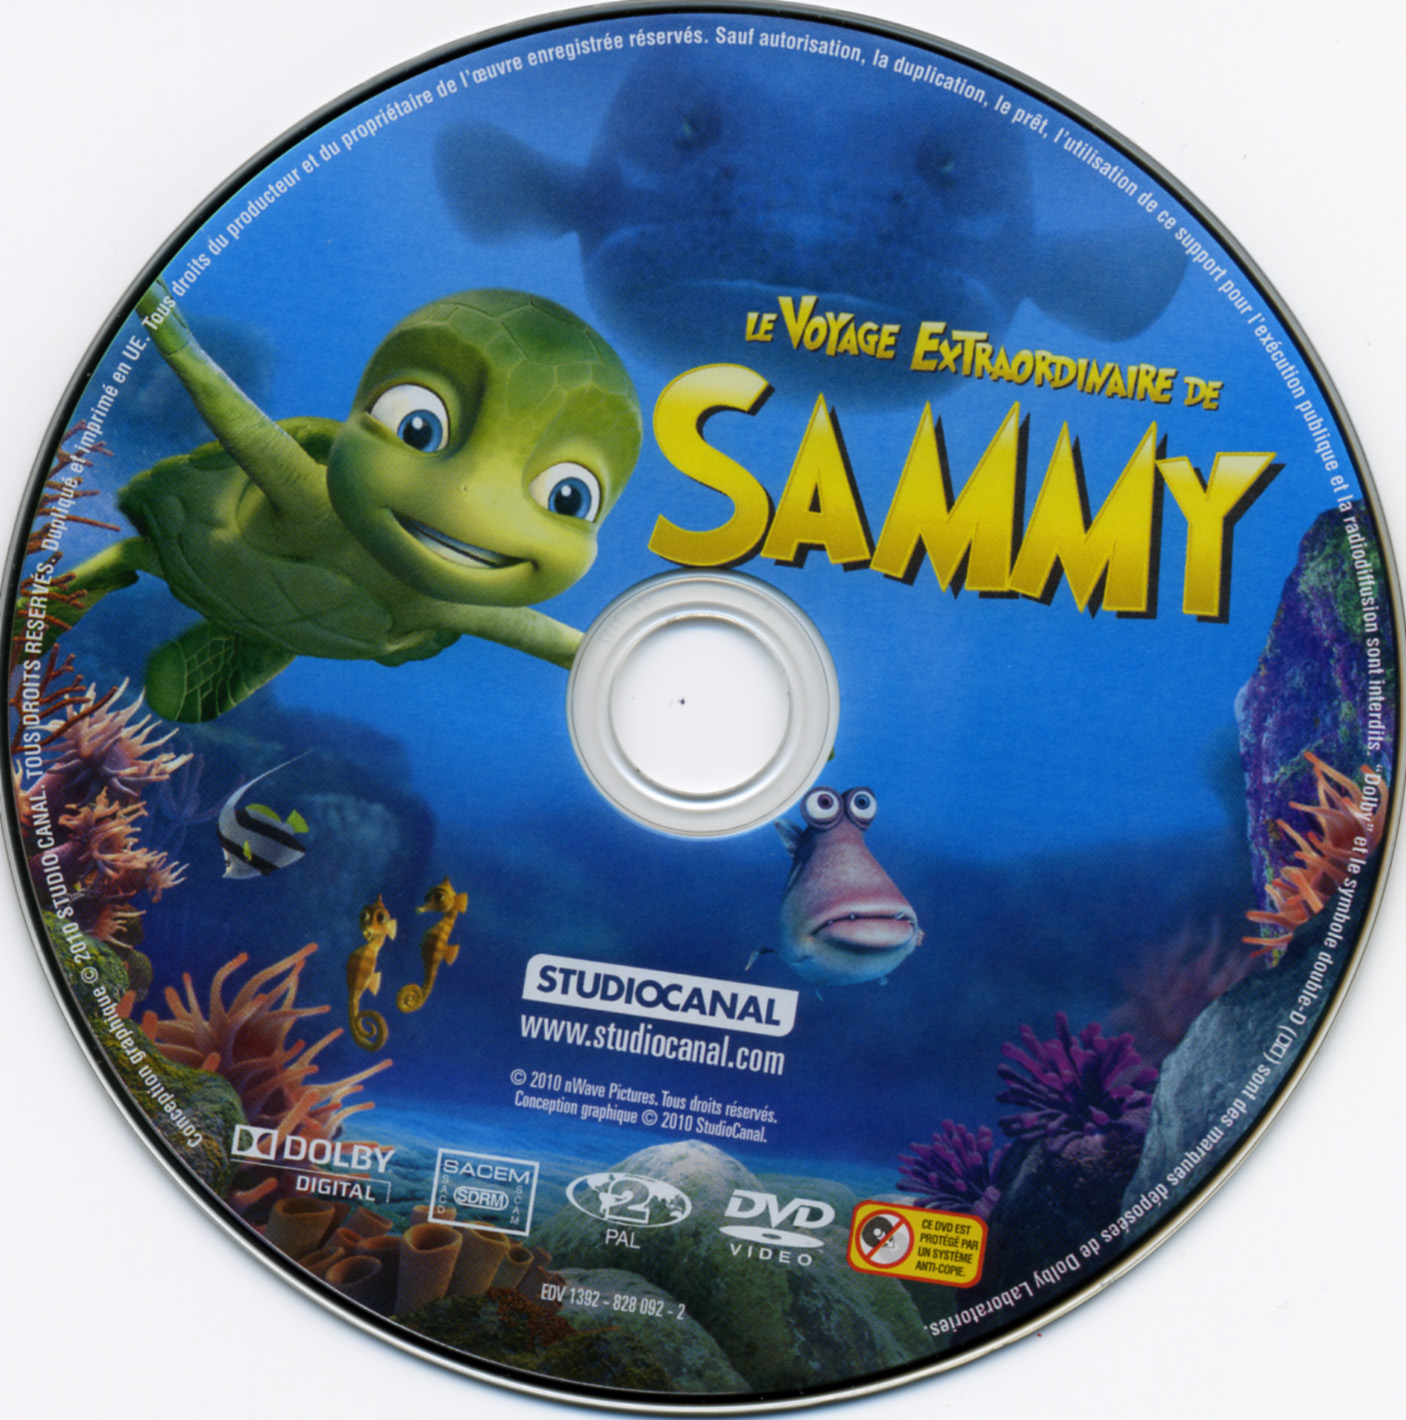 Le voyage extraordinaire de Sammy